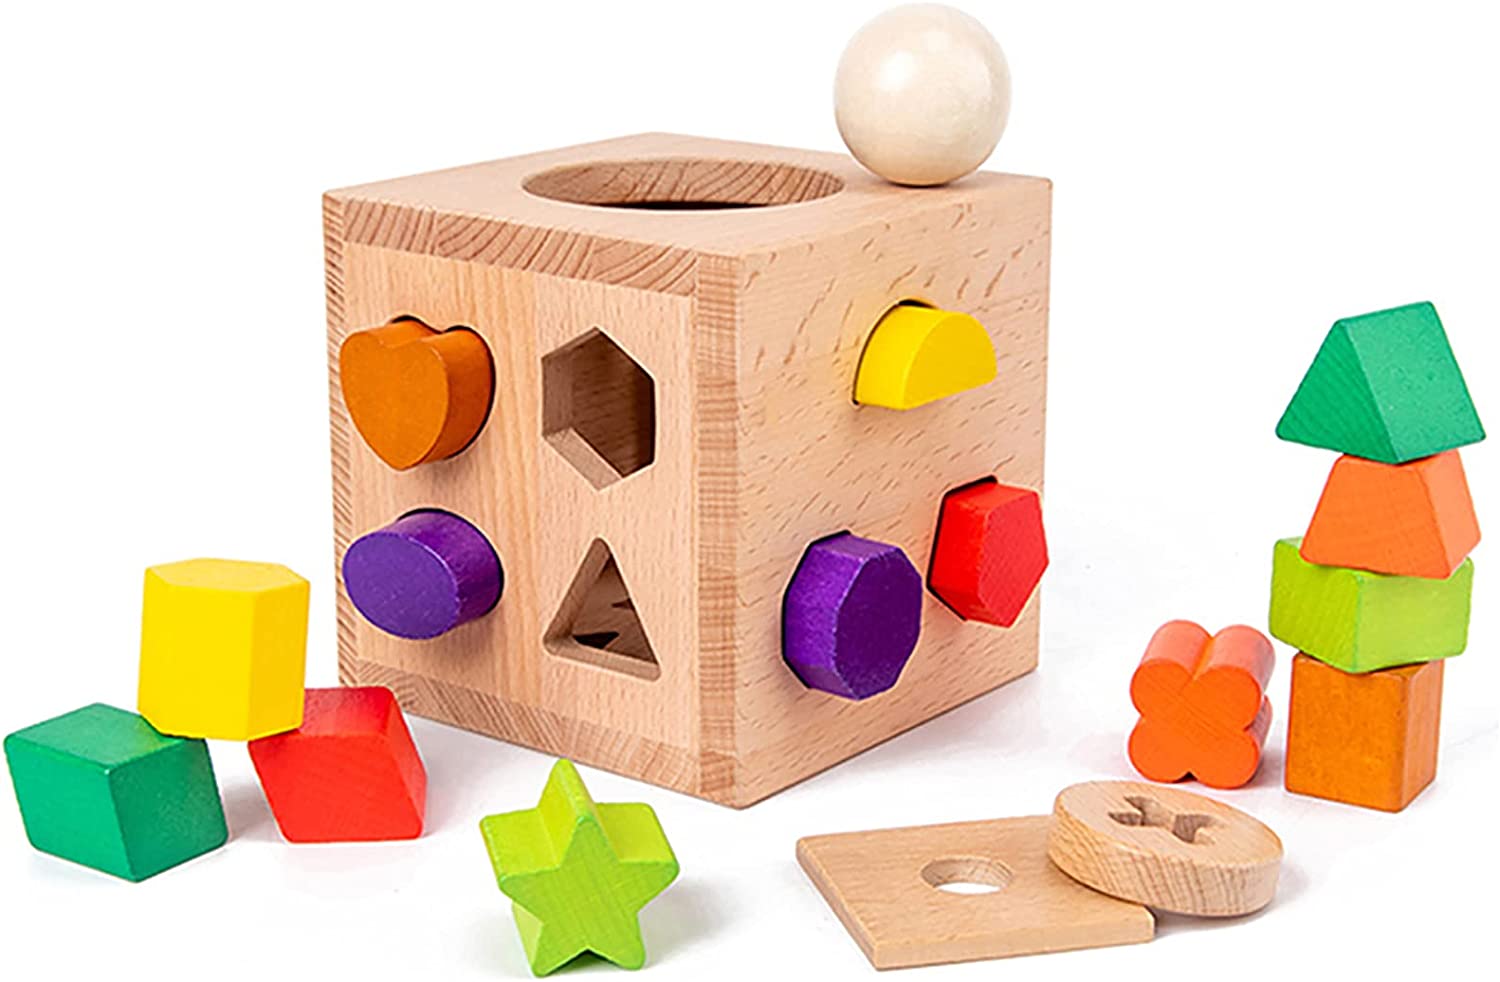 型はめ パズル 木製 形合わせ はめこみ おもちゃ 赤ちゃん モンテソッリー 知育玩具 図形認知 空間認識 着手力 知力開発 赤ちゃん 子供 ギフト 出産祝い 誕生日贈り物 「17点ブロック」